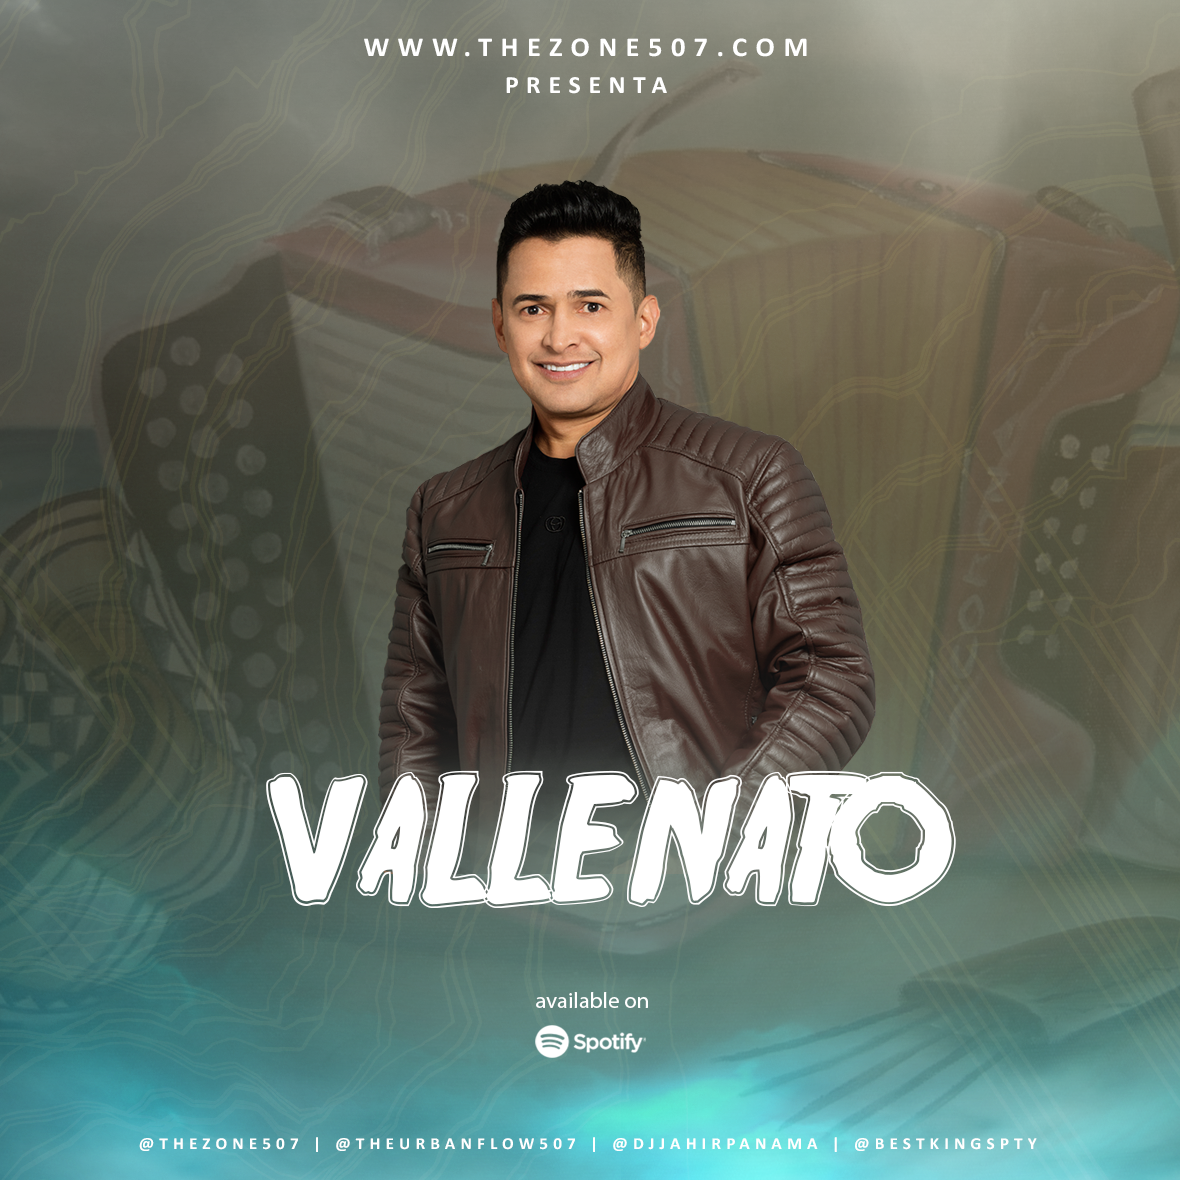 Vallenato Mix Vol.1 - @djjahirpanama (djsthezone507)